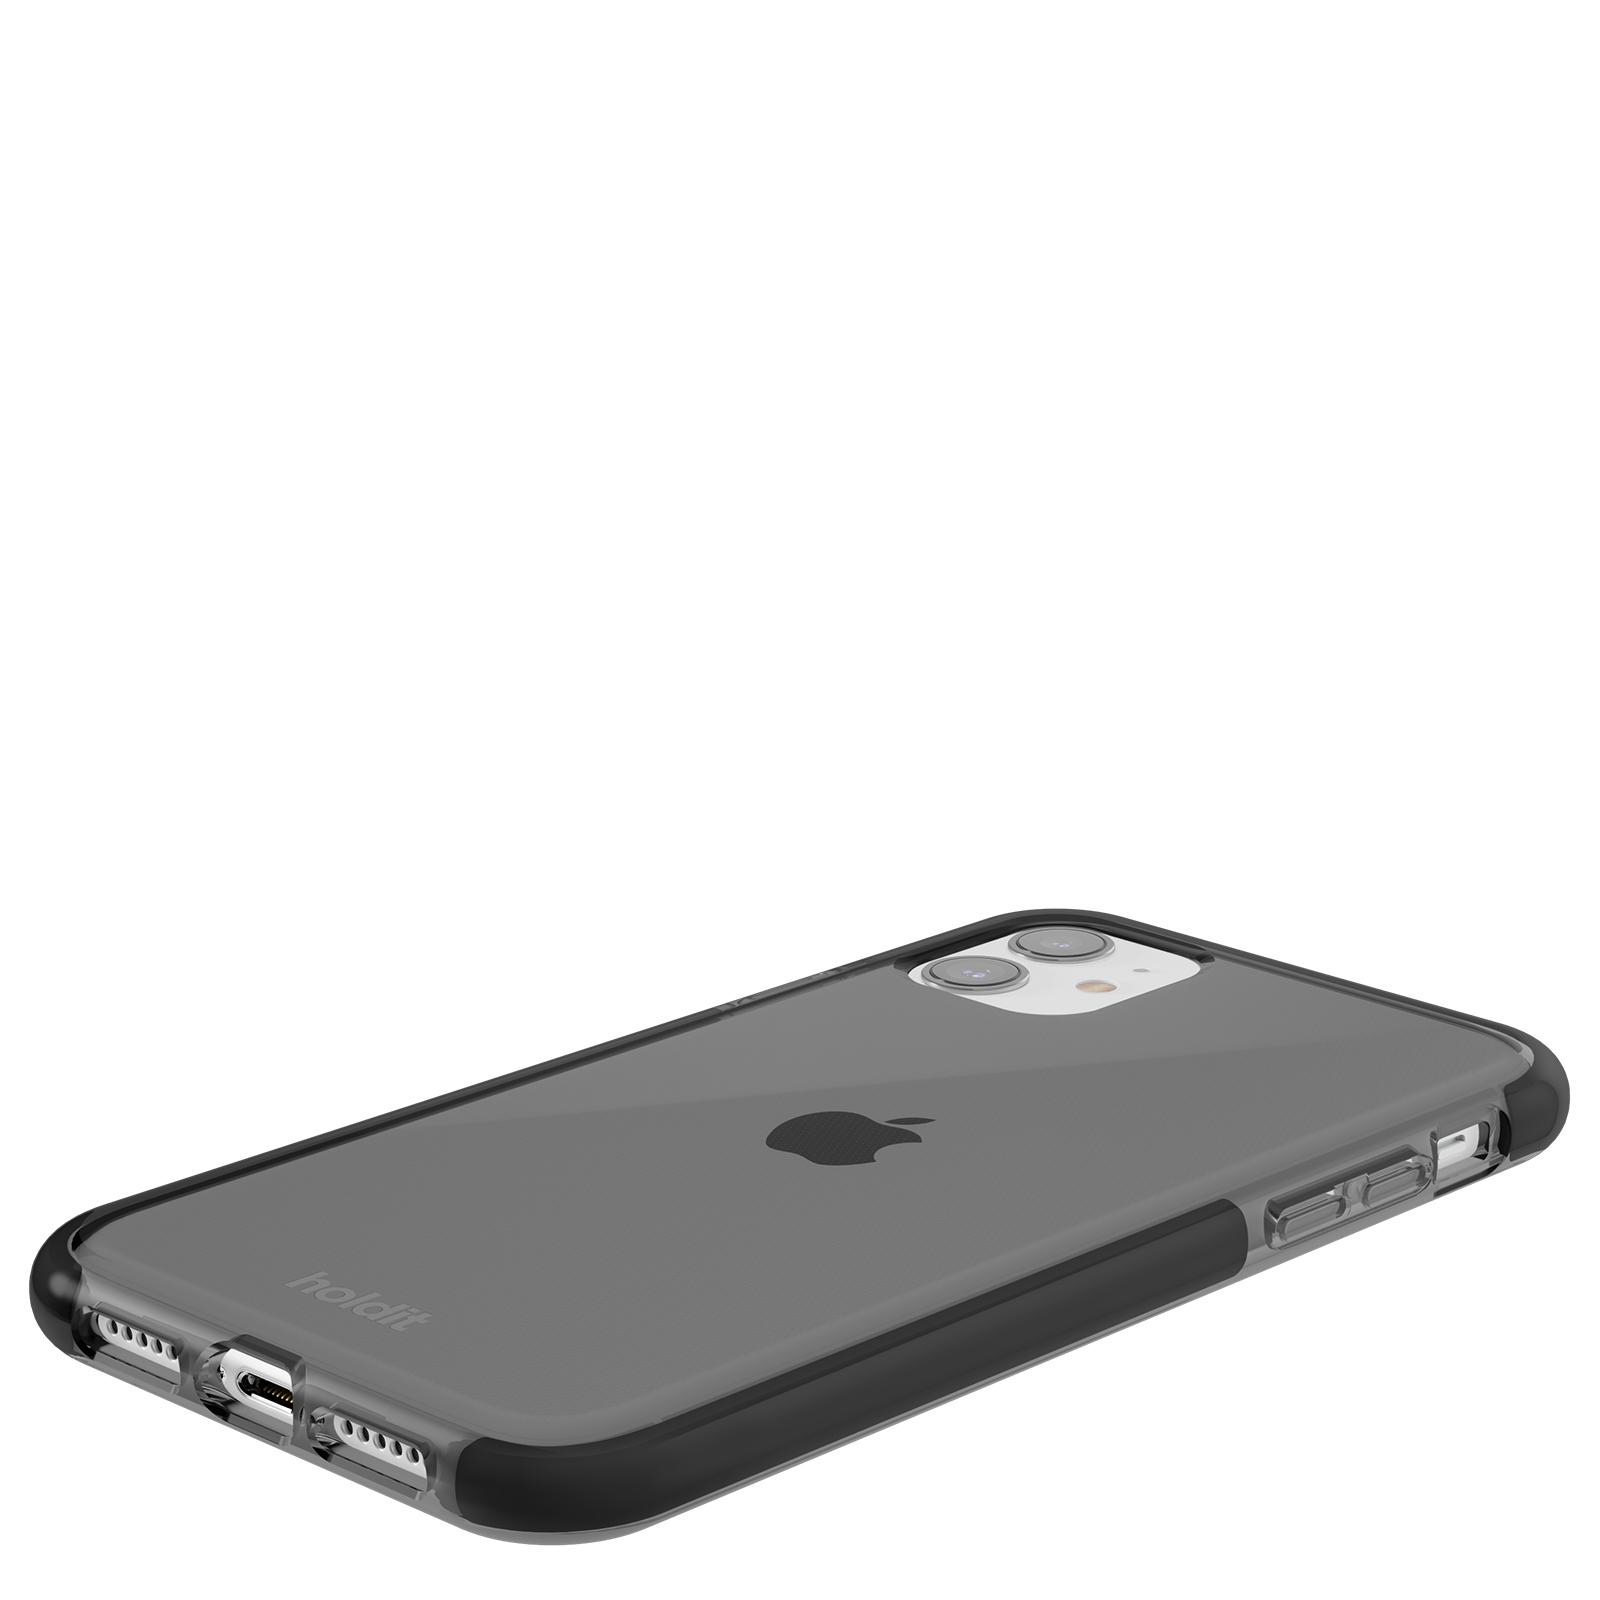 Apple, Seethru HOLDIT iPhone Black Backcover, Case, 11/XR,